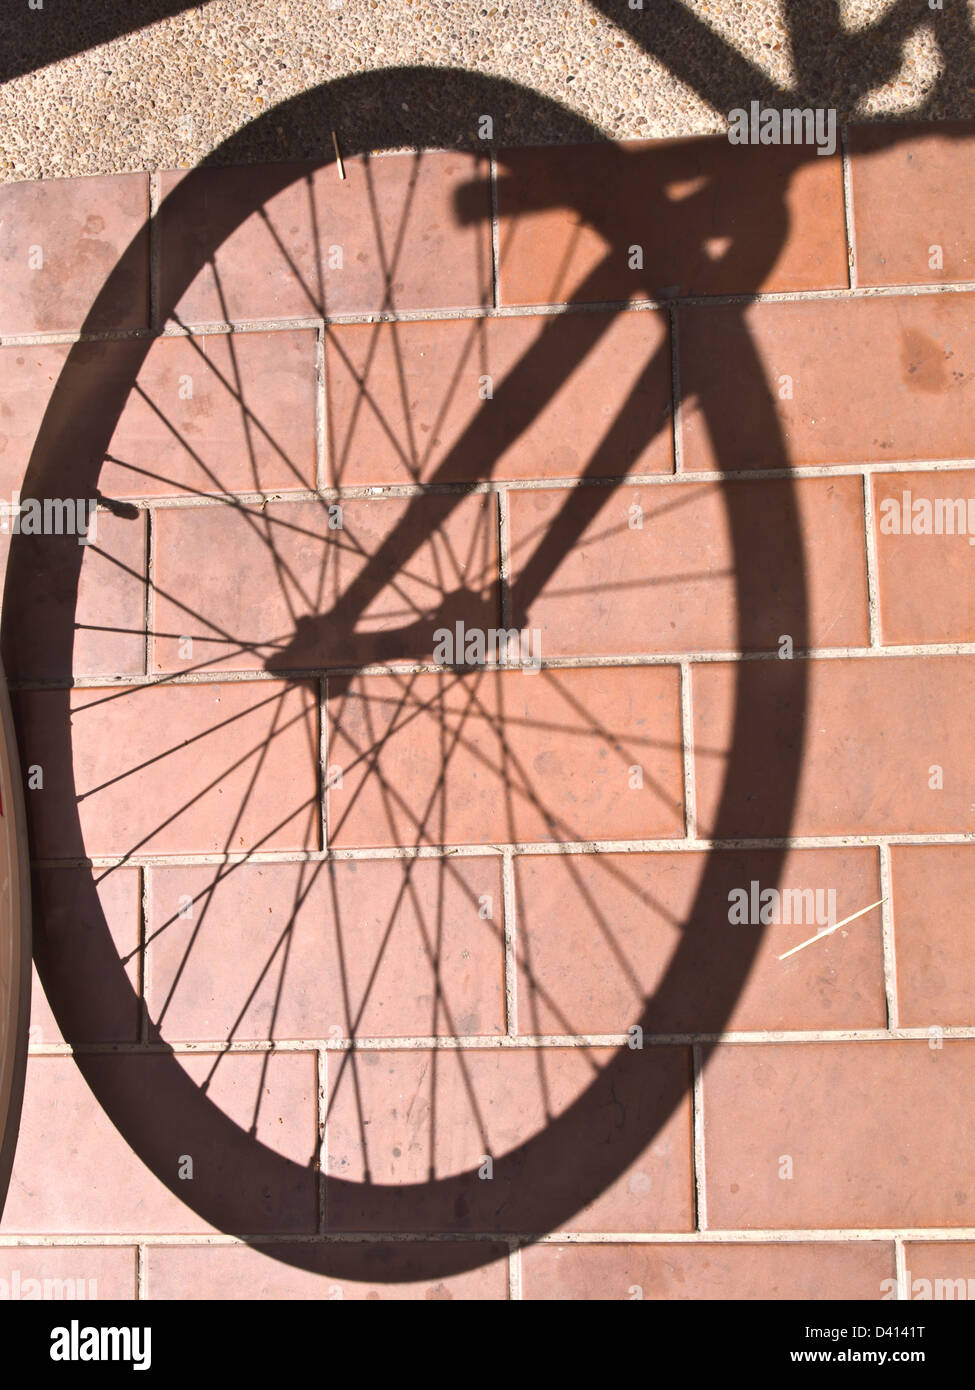 bike wheel shadow on floor tiles Stock Photo